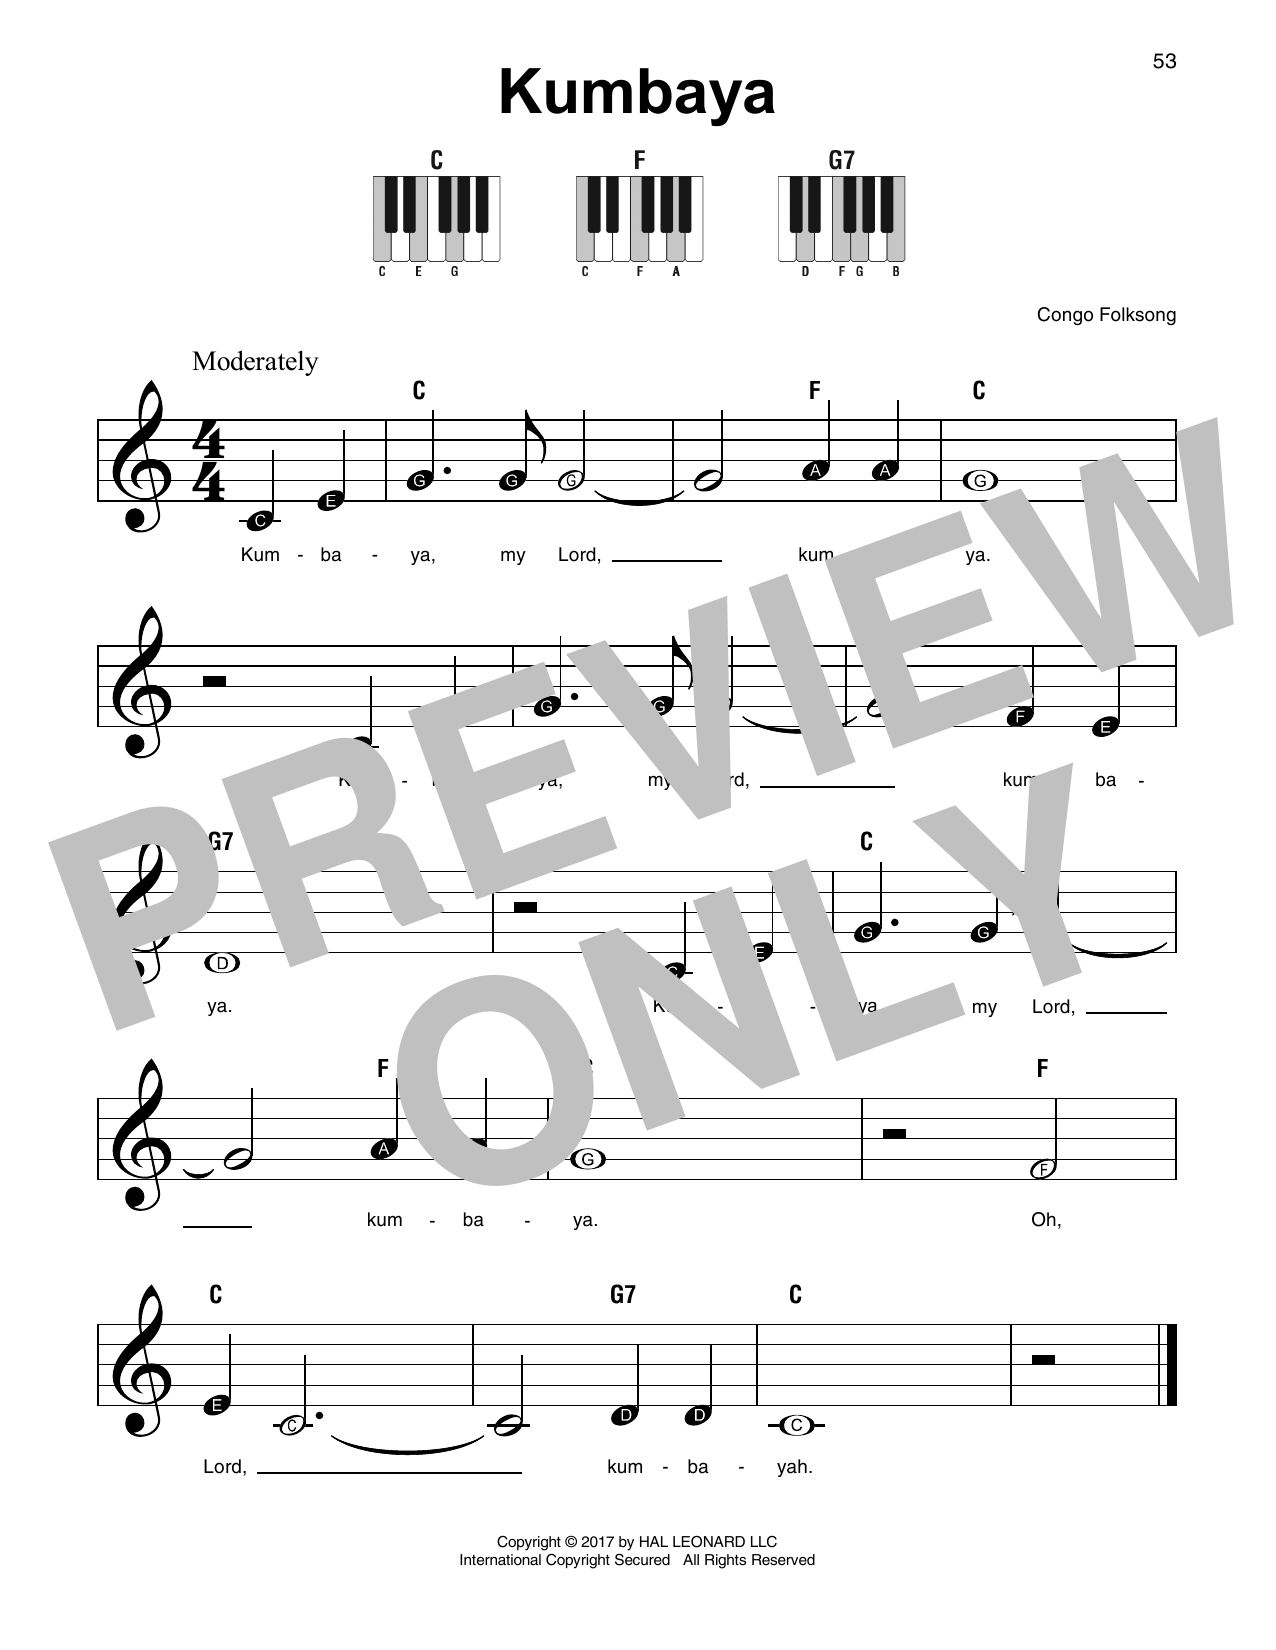 Congo Folksong Kumbaya Sheet Music Notes & Chords for Ocarina - Download or Print PDF